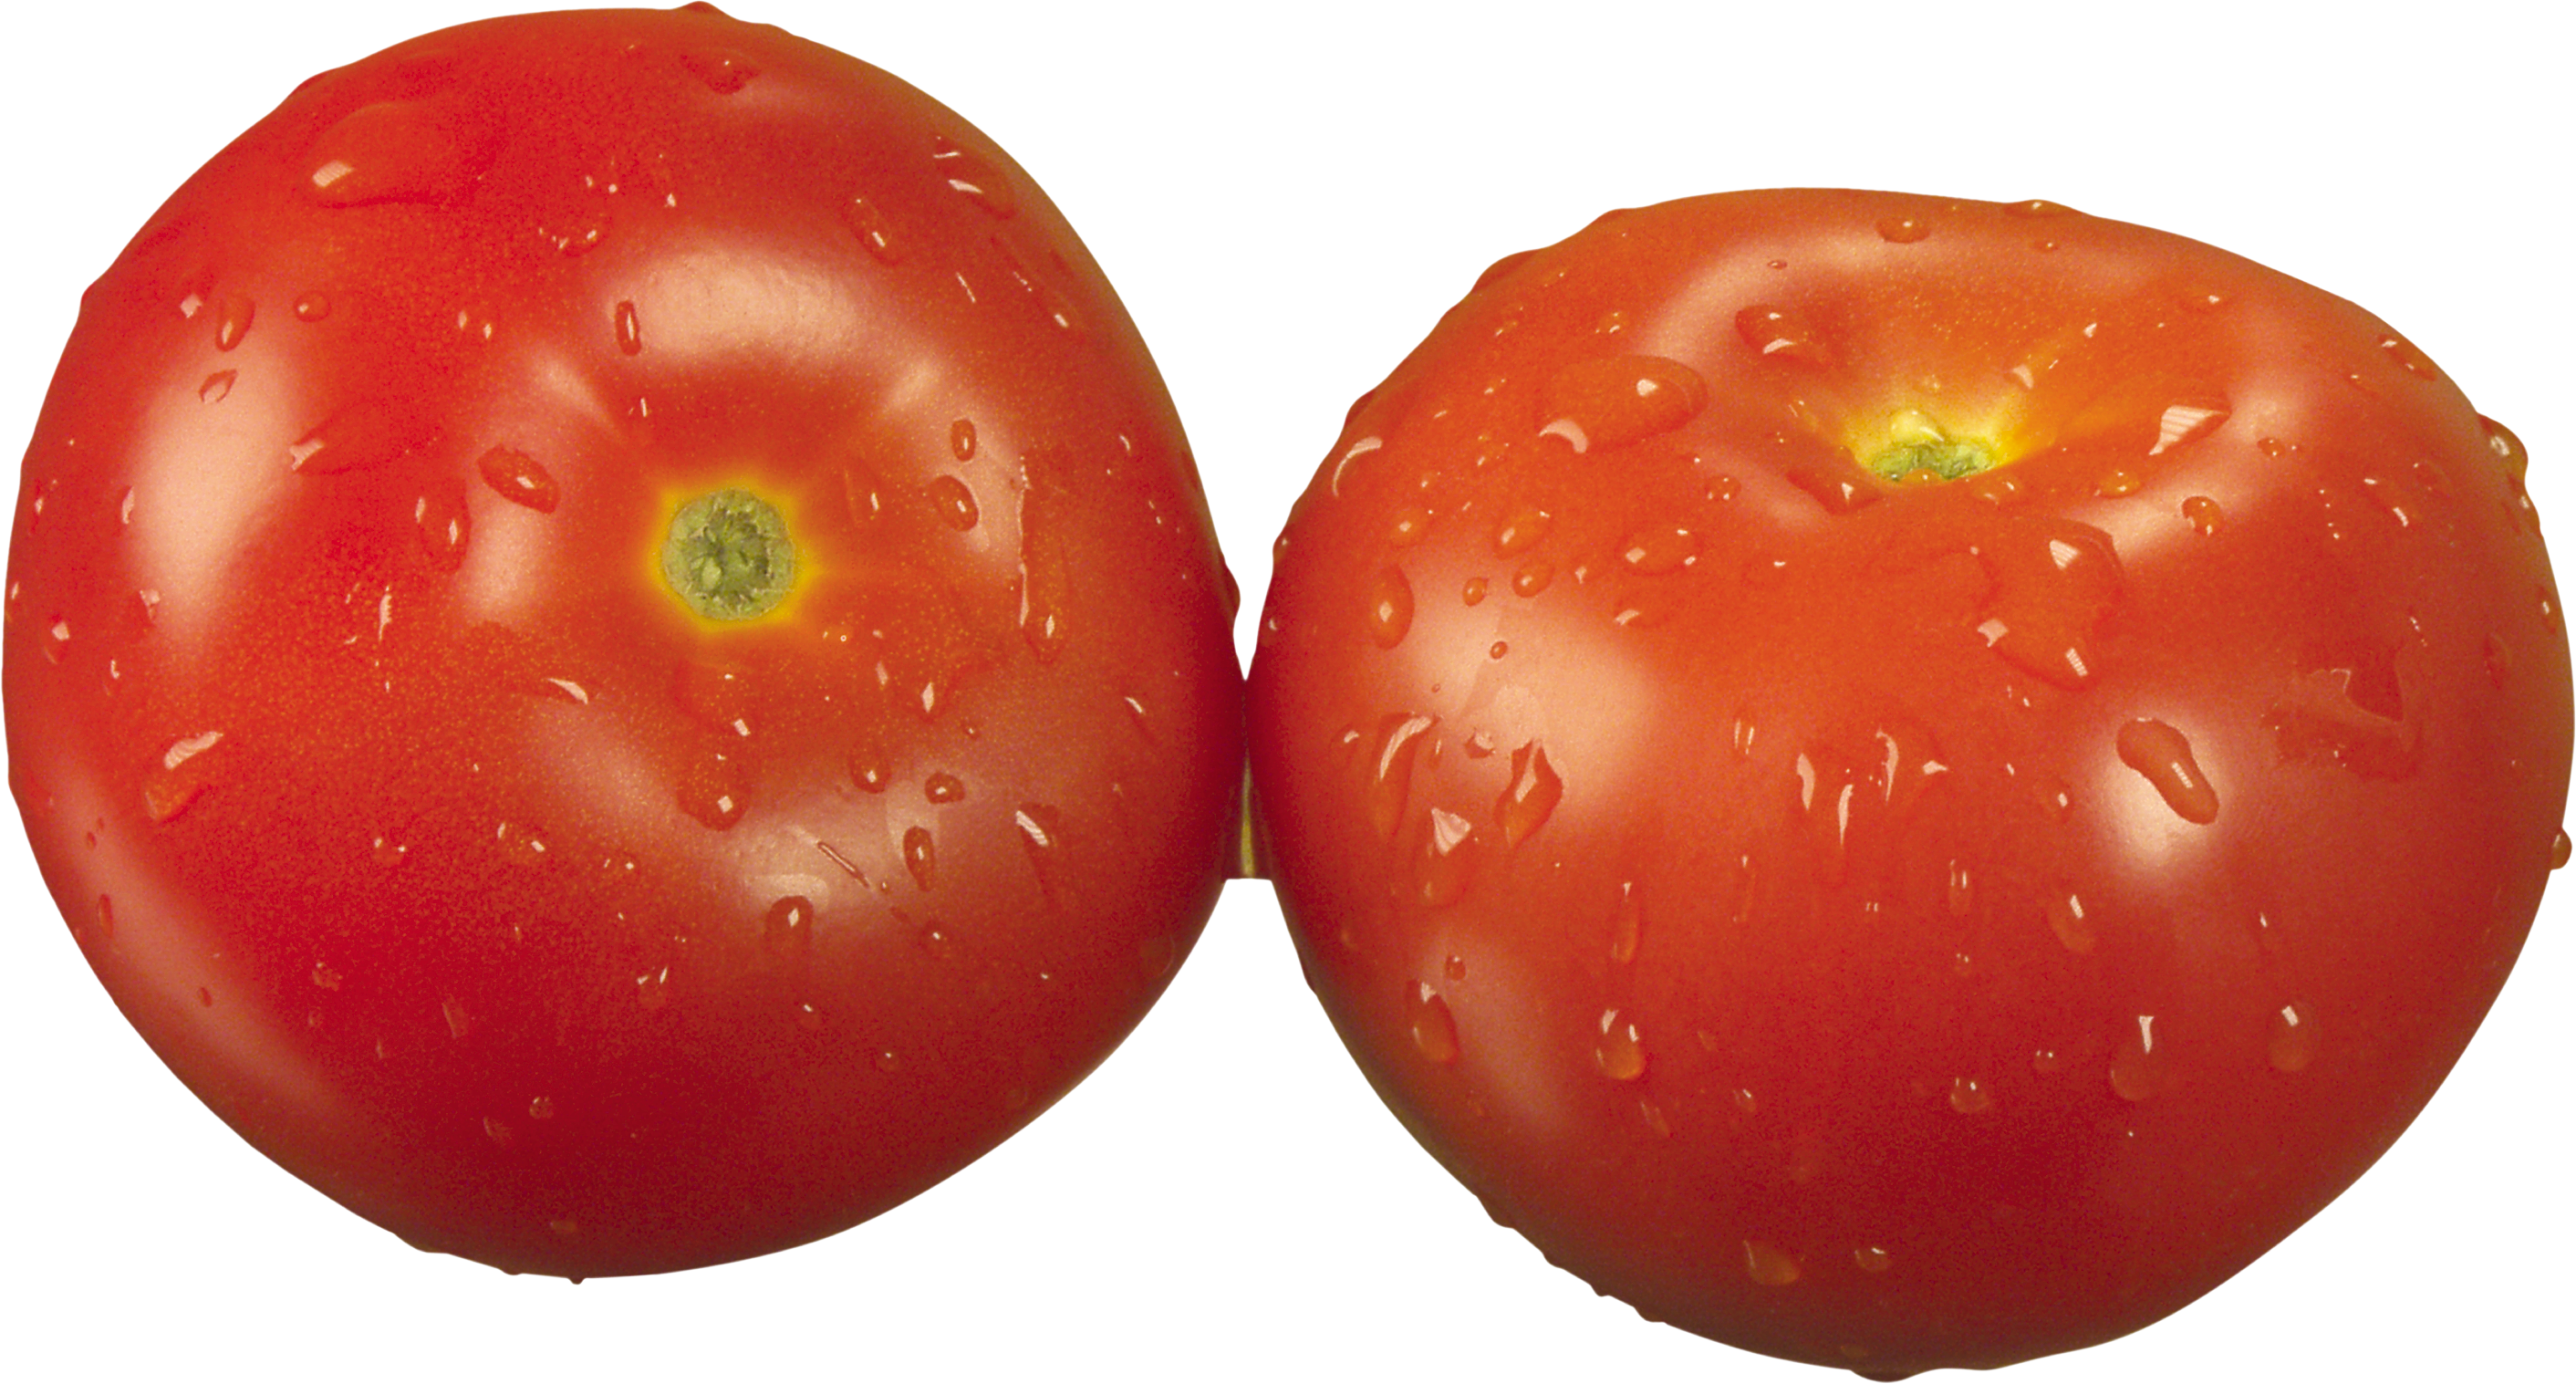 两个番茄